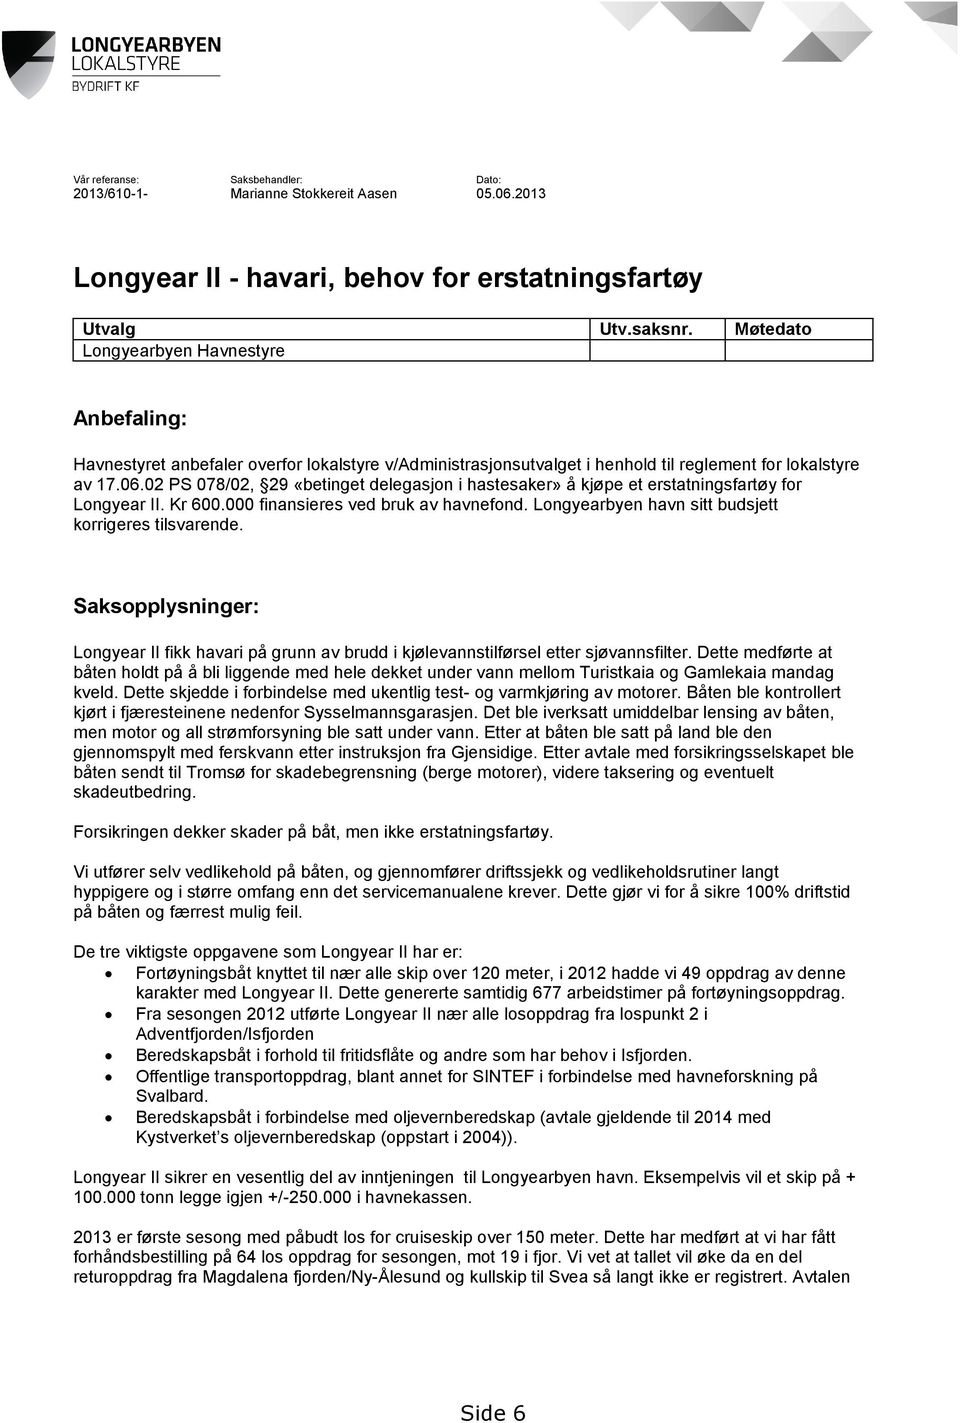 02 PS 078/02, 29 «betinget delegasjon i hastesaker» å kjøpe et erstatningsfartøy for Longyear II. Kr 600.000 finansieres ved bruk av havnefond. Longyearbyen havn sitt budsjett korrigeres tilsvarende.